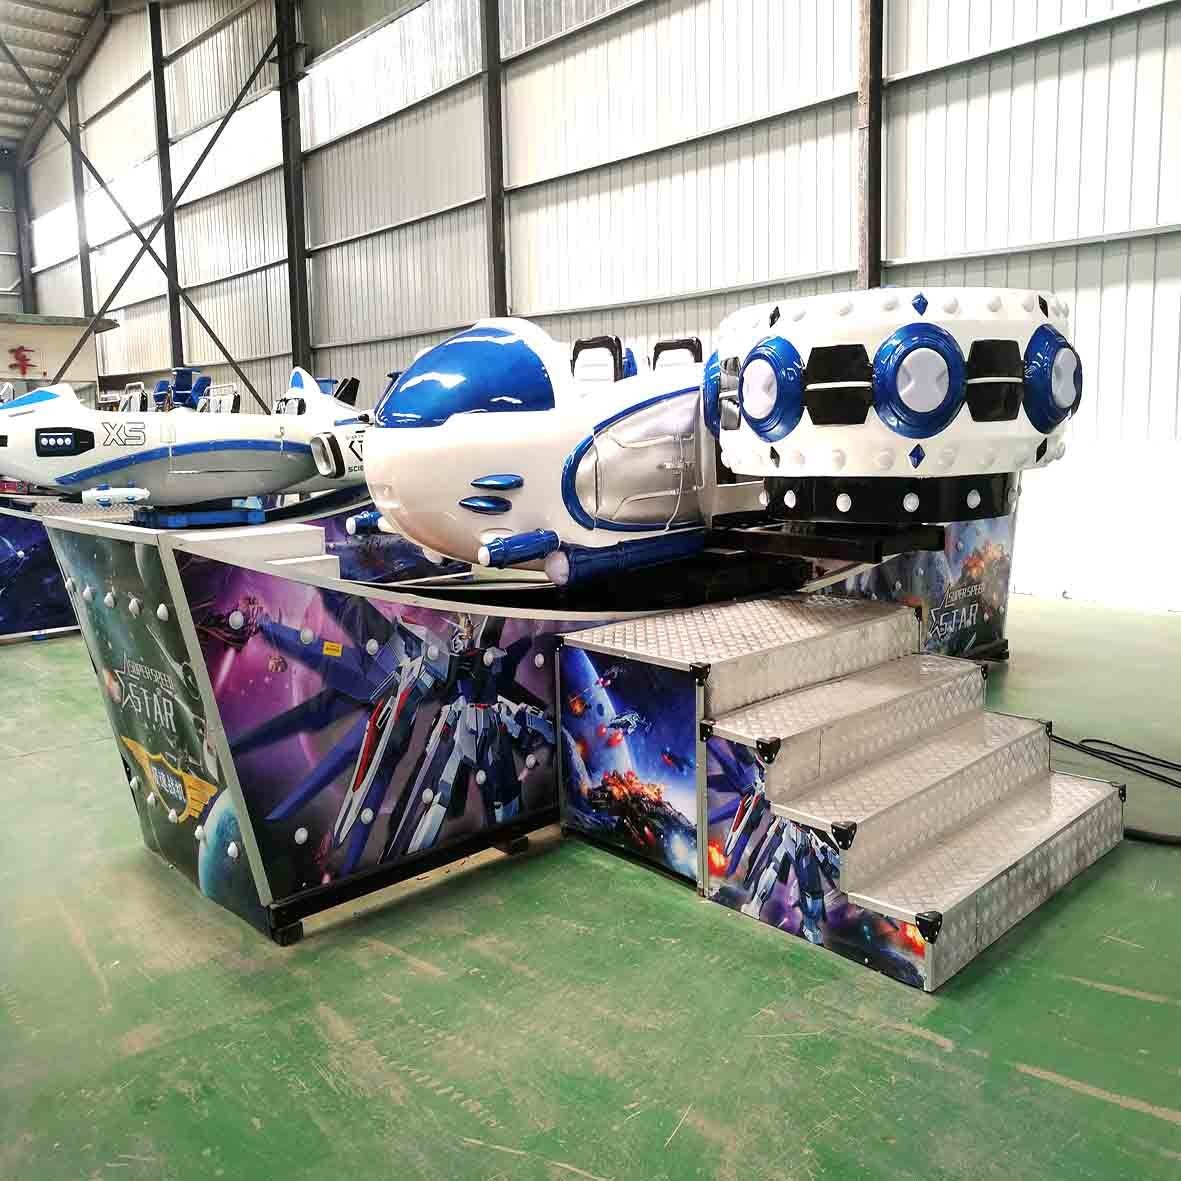 双排座宝马飞船游乐设备   户外雷霆战机参数  好玩的极速飞船游乐设备